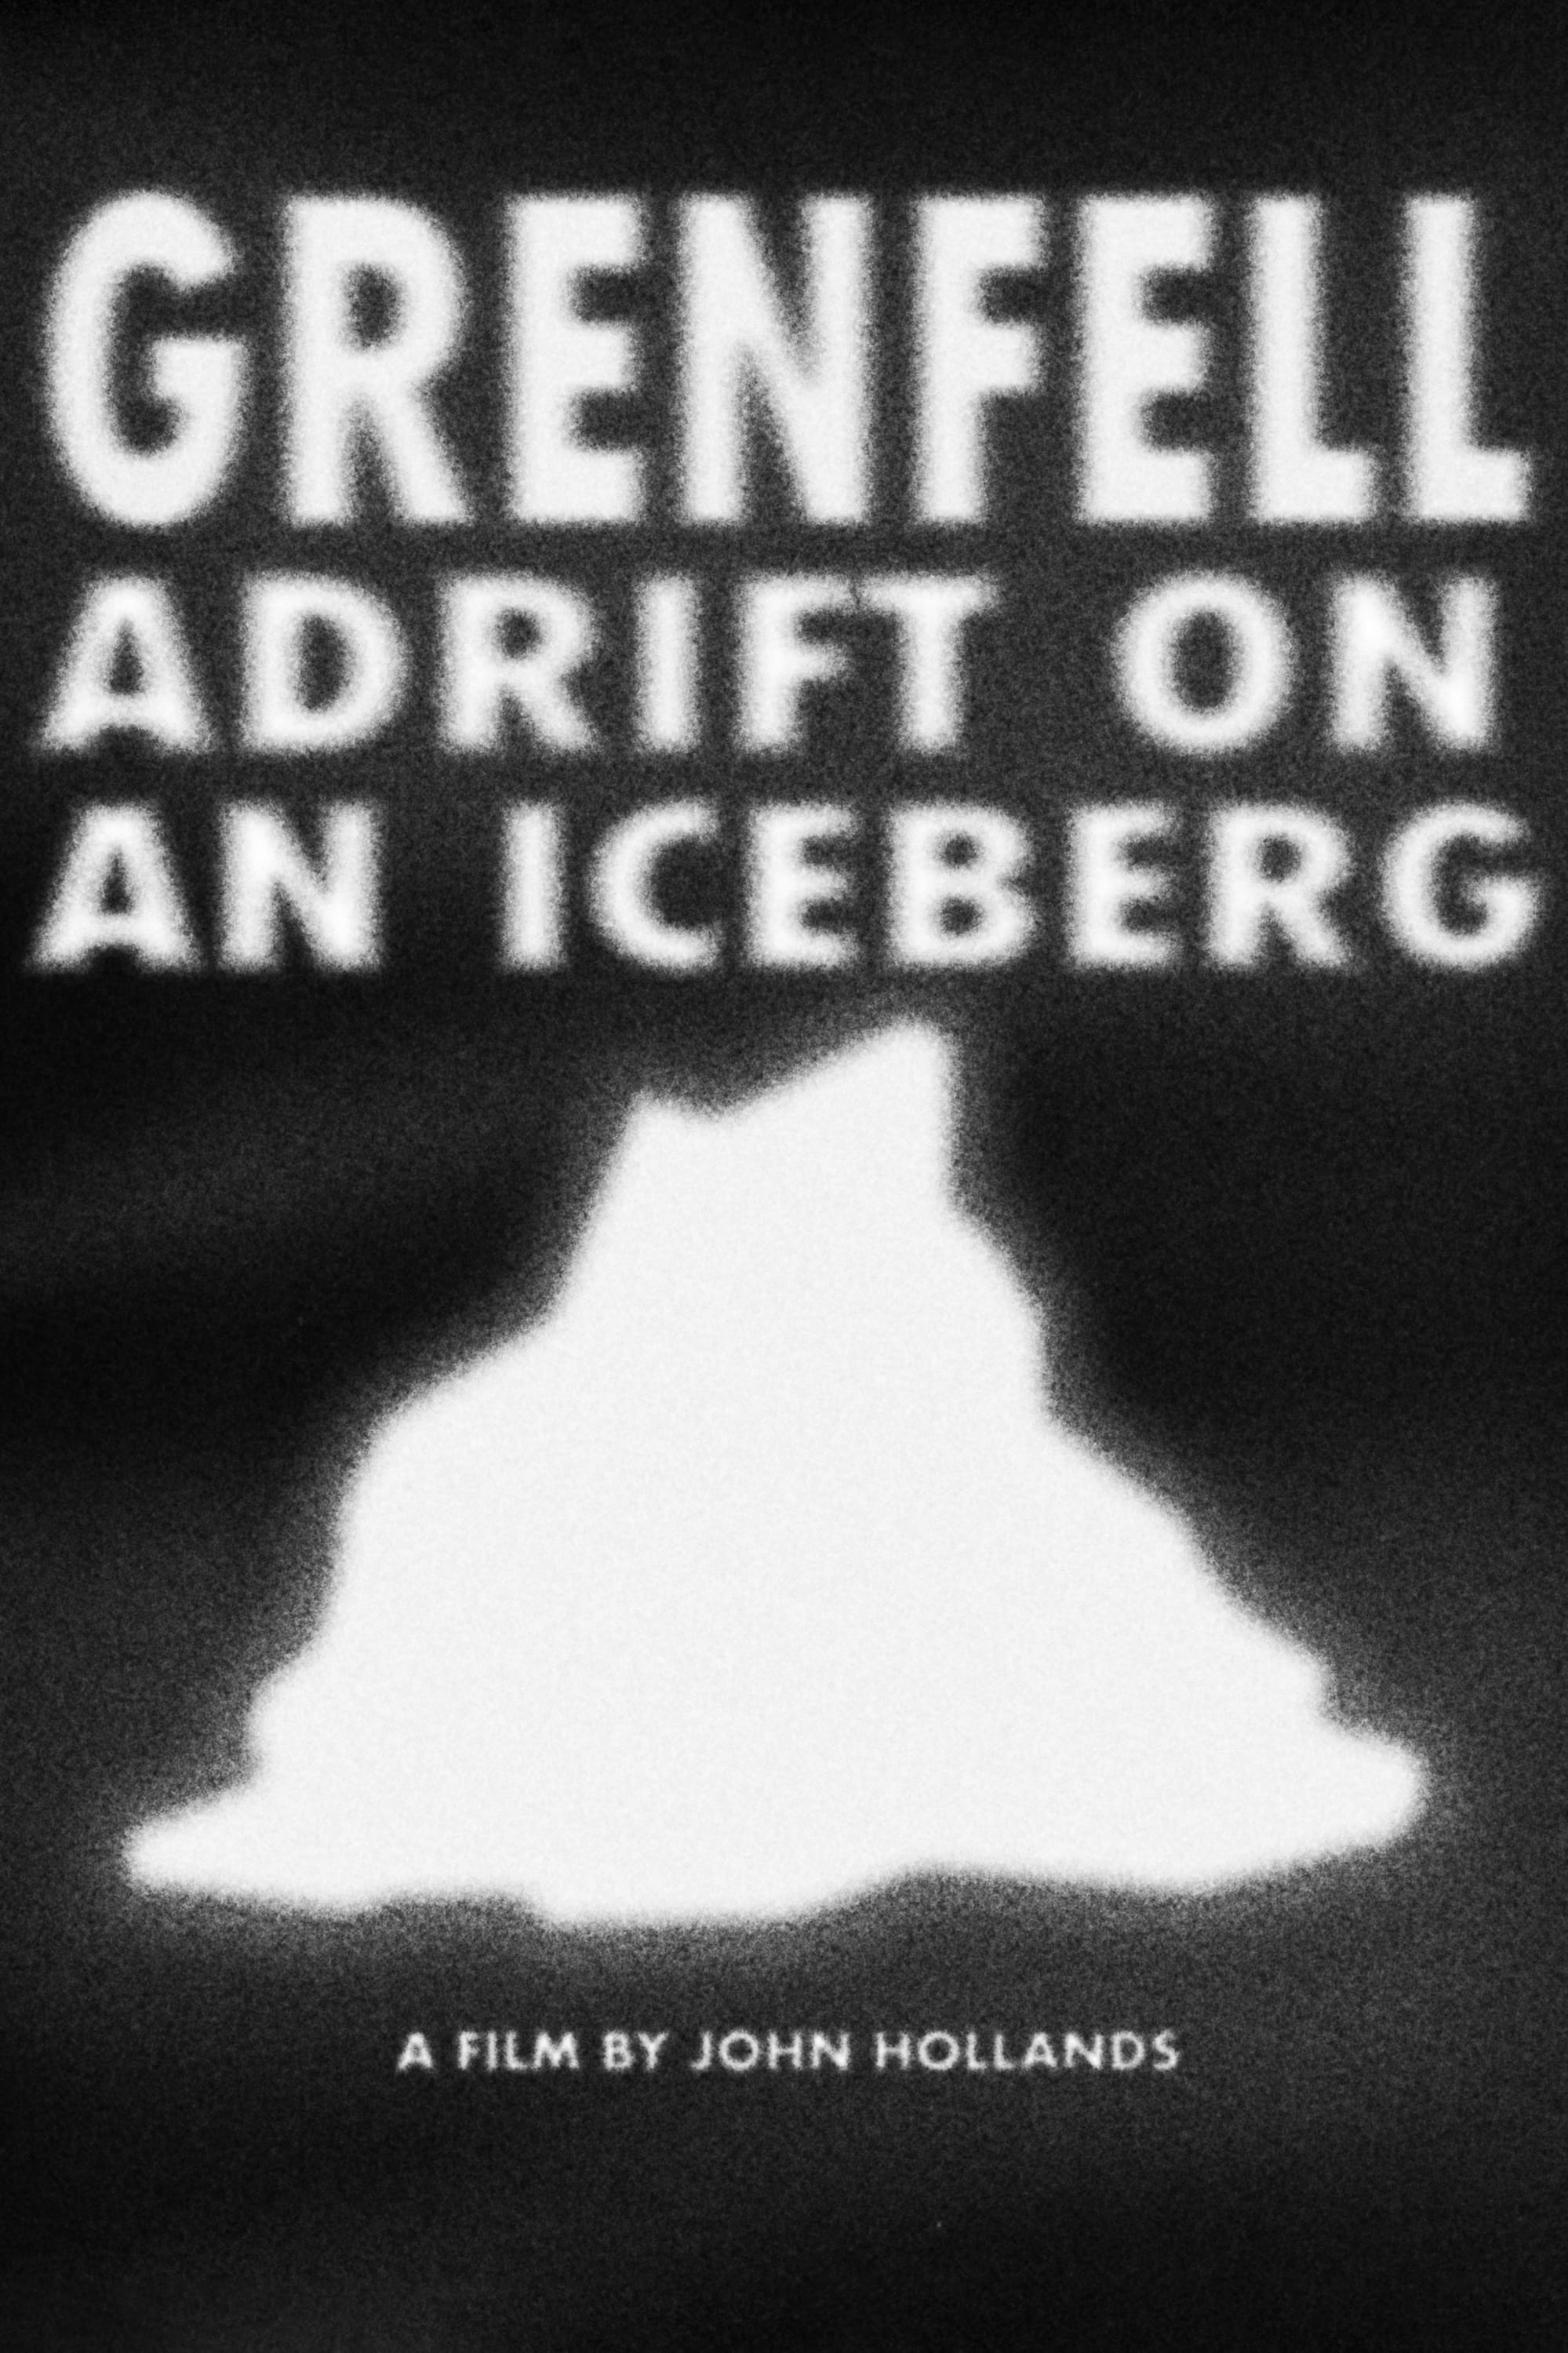 Grenfell Adrift on an Iceberg